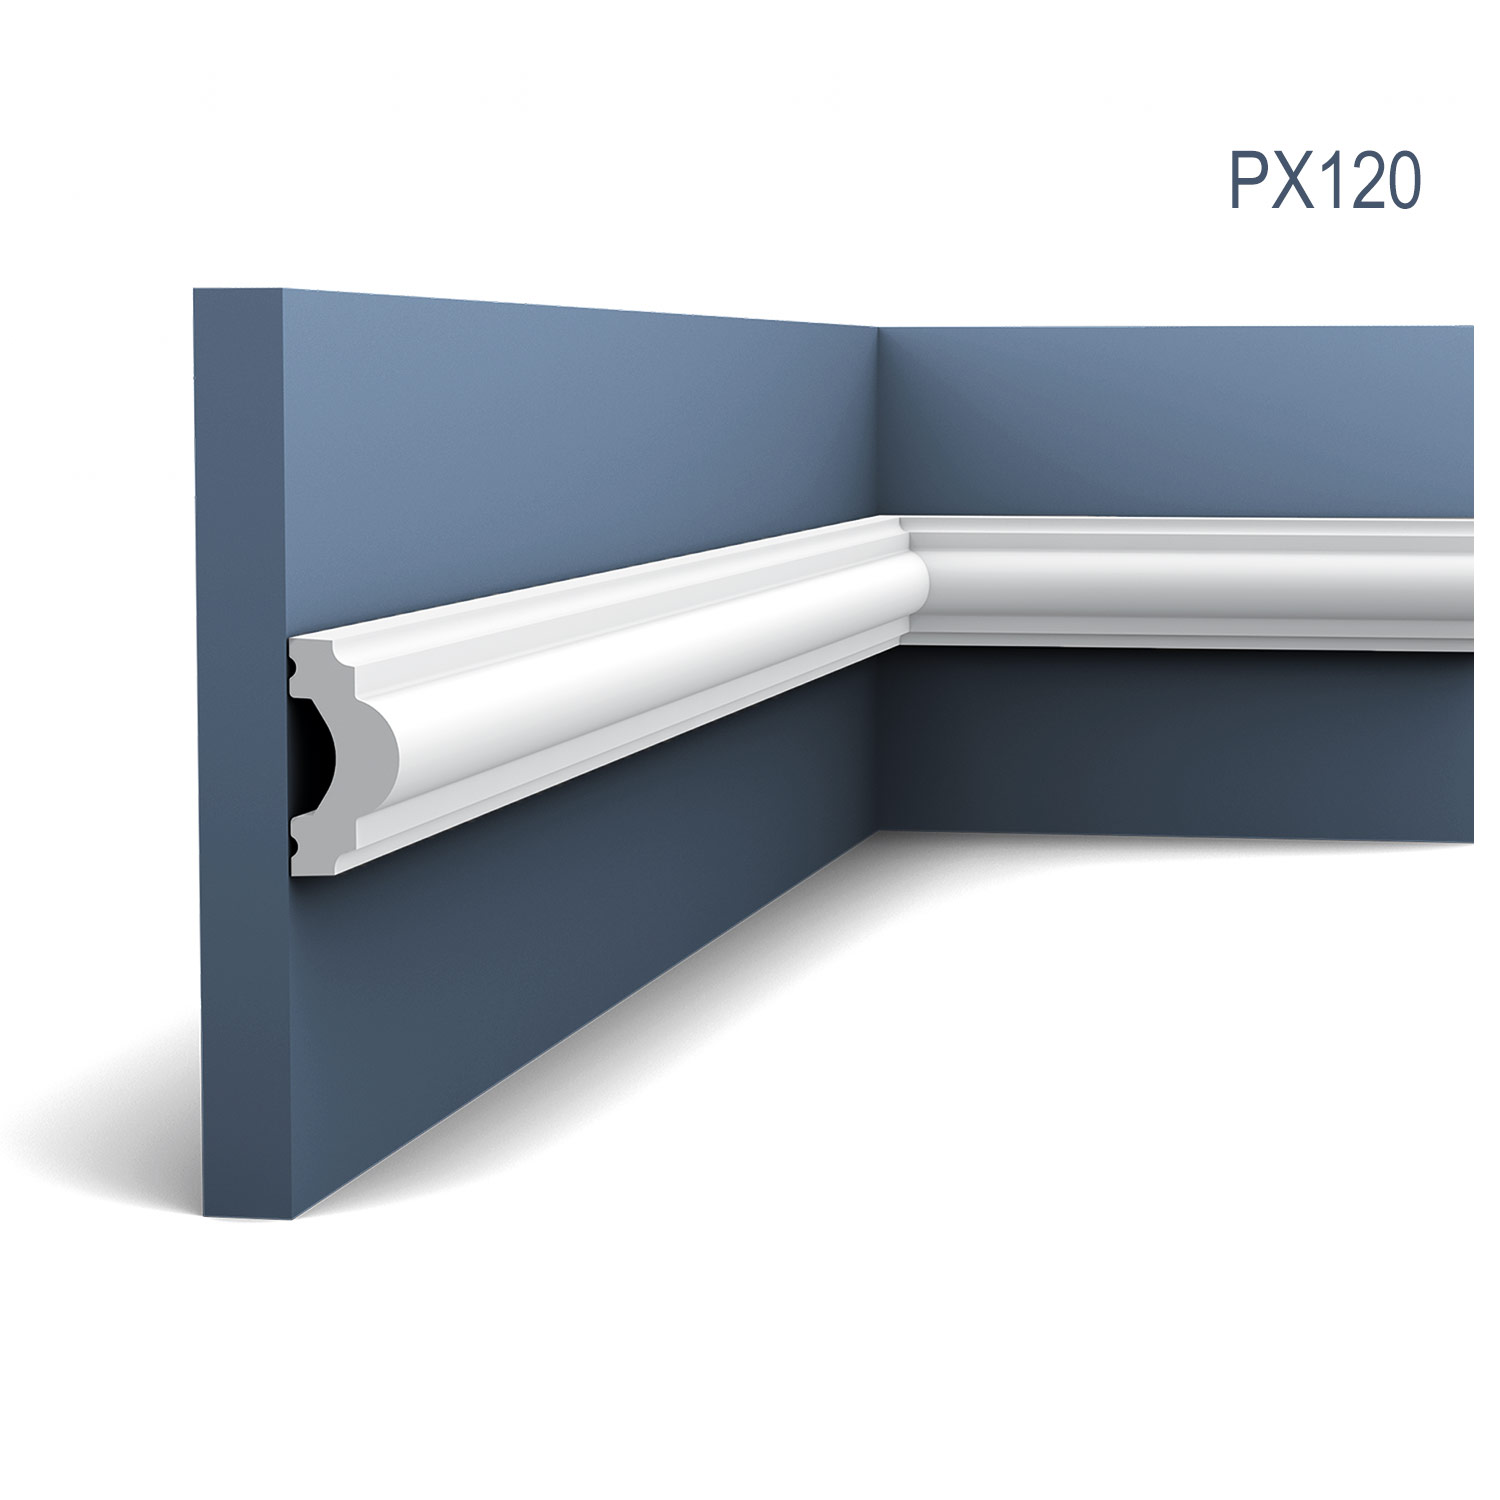 Brau intermediar PX120, profil decorativ multifunctional, pentru perete, alba, vopsibila, rigida, calitate excelenta, Belgia, din Duropolymer®, L 200 x H 4 x W 2 cm